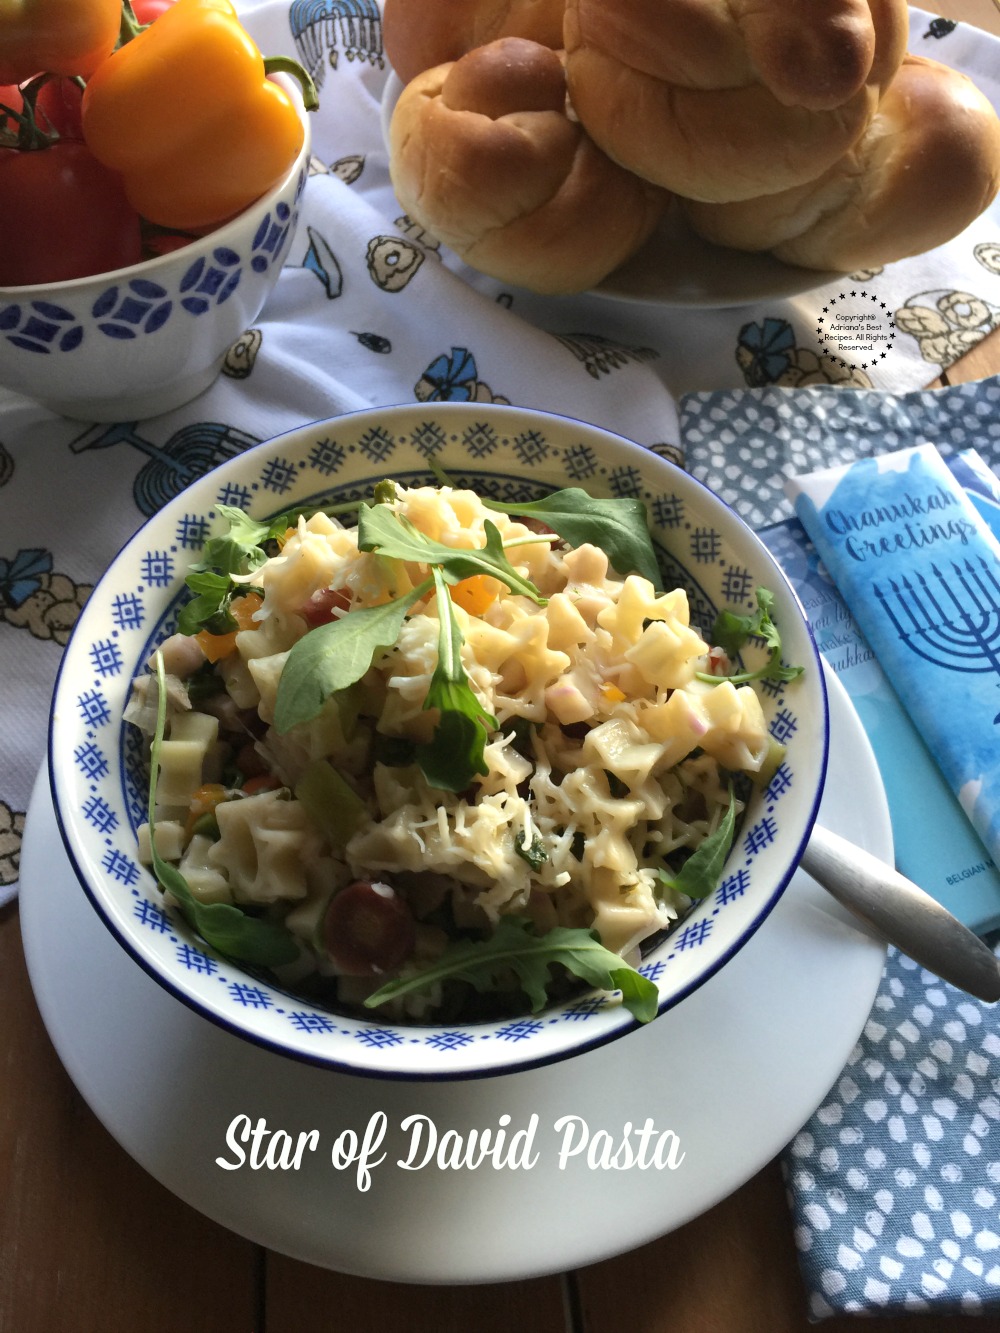 Esta receta para Pasta Estrella de David tiene espárragos tiernos, rúcula, zanahorias arcoiris y queso parmesano